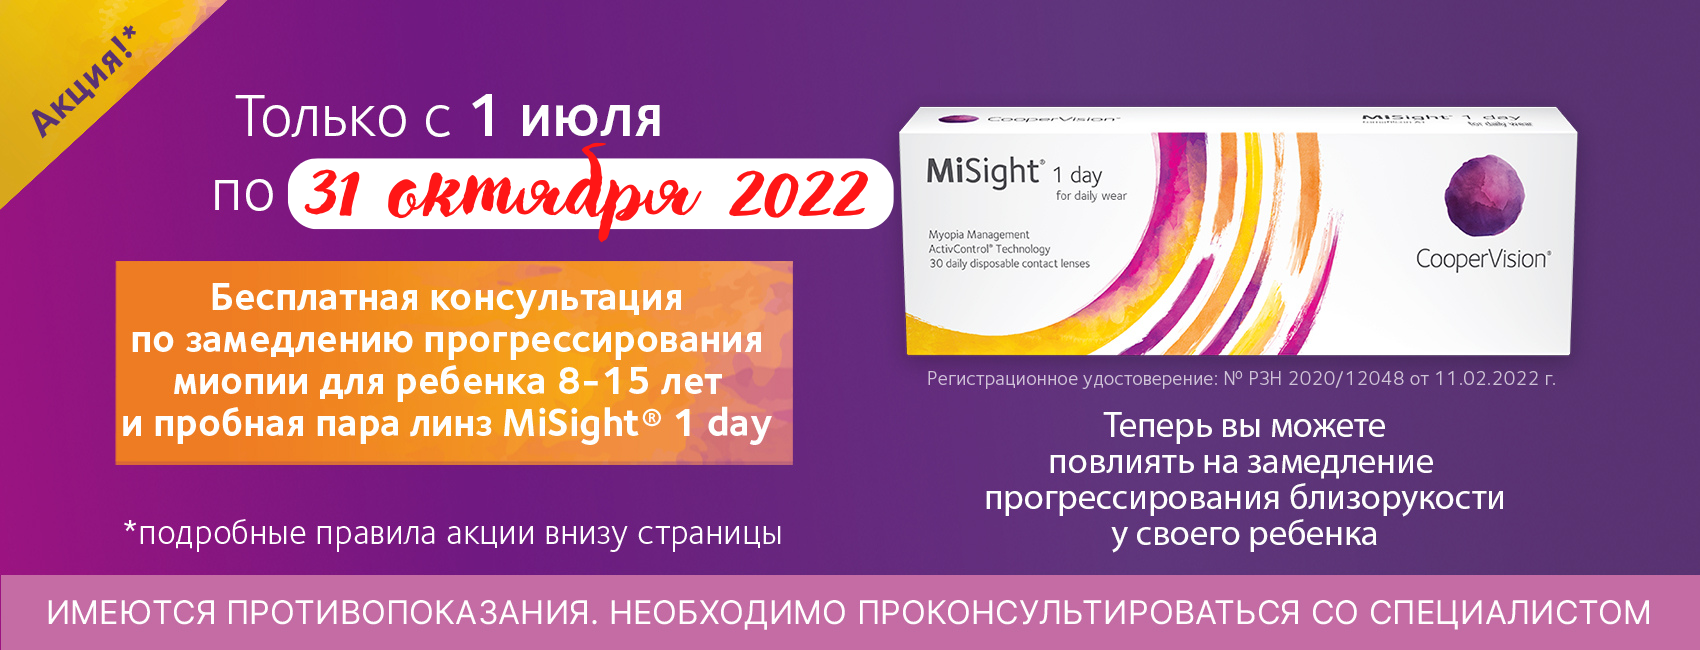 Бесплатная консультация детского офтальмолога и пробная пара линз в клинике "Виста" с 1 июля по 31 октября 2022.